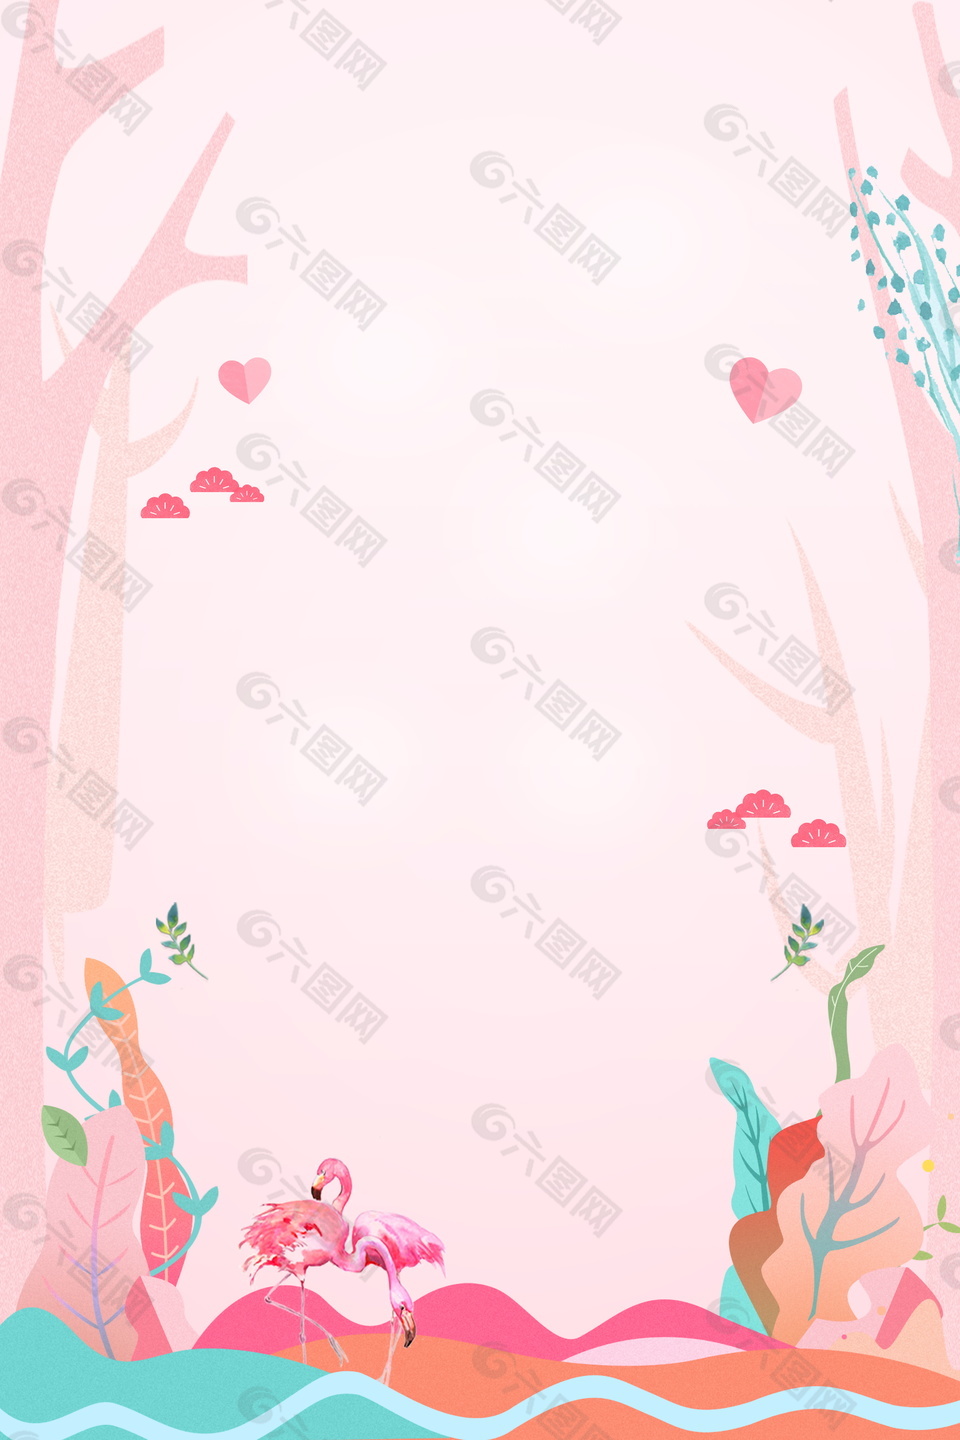 粉色系初春海报背景设计